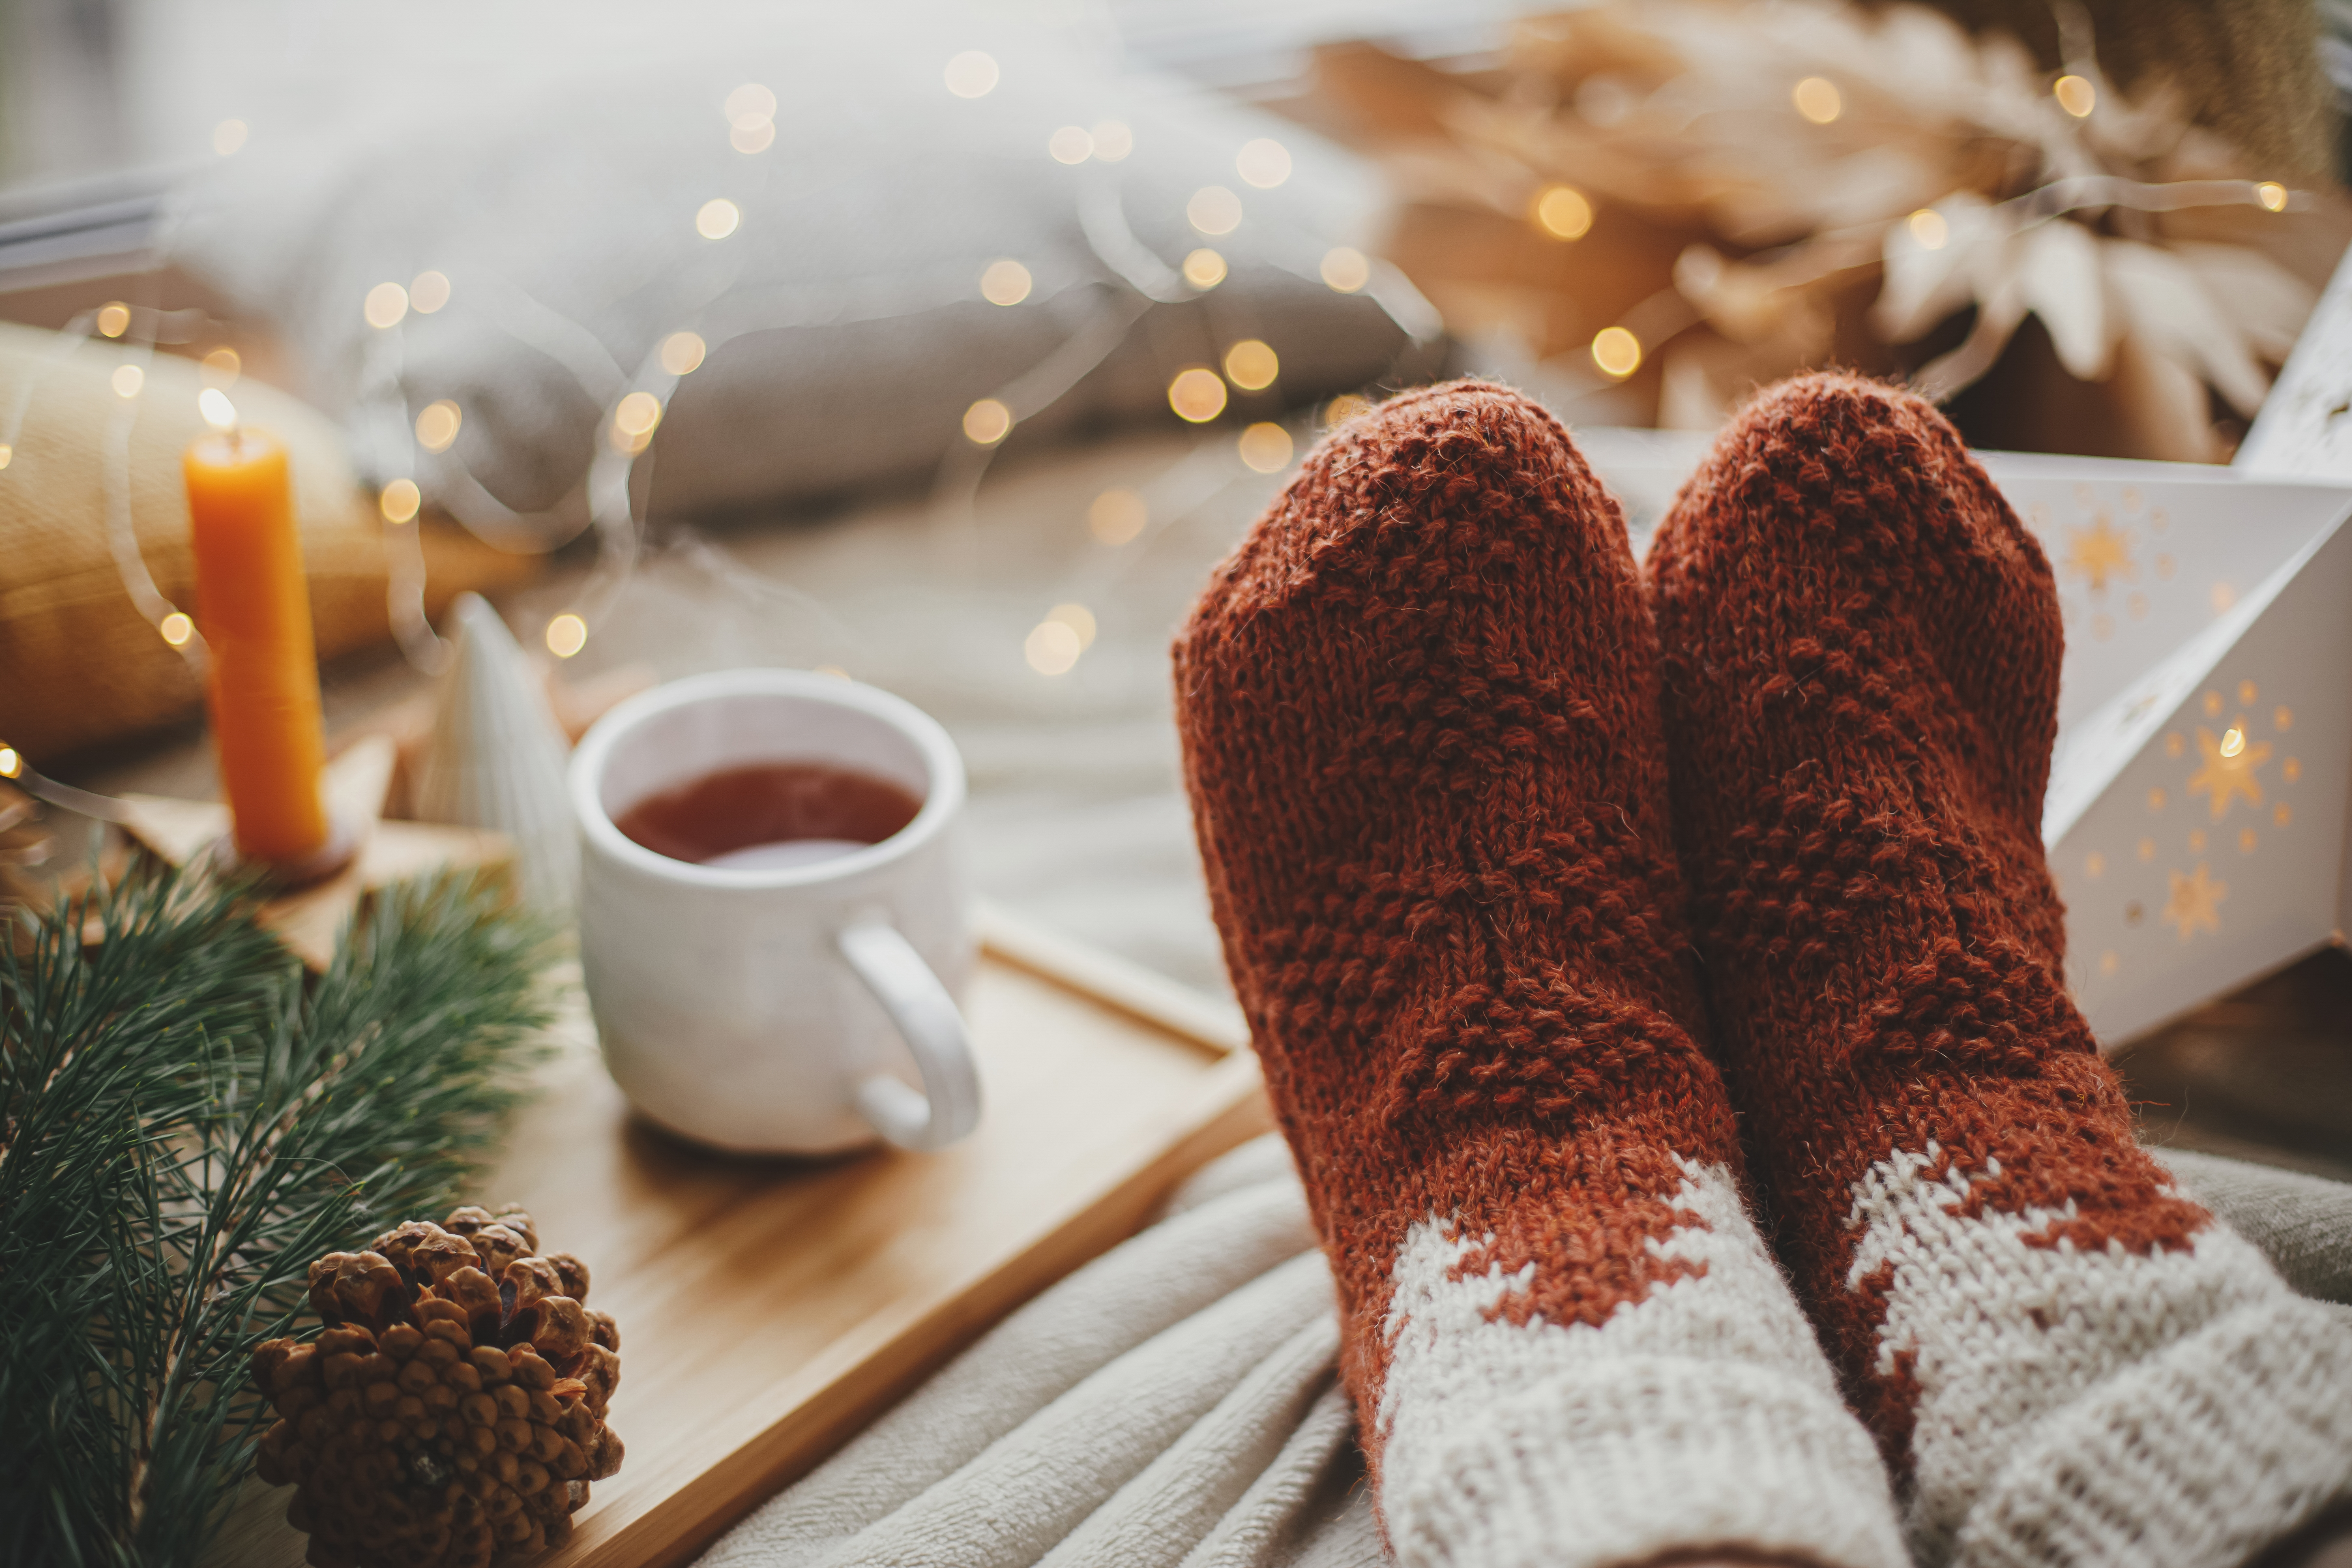 Une personne portant des chaussettes douillettes avec du thé | Source : Shutterstock